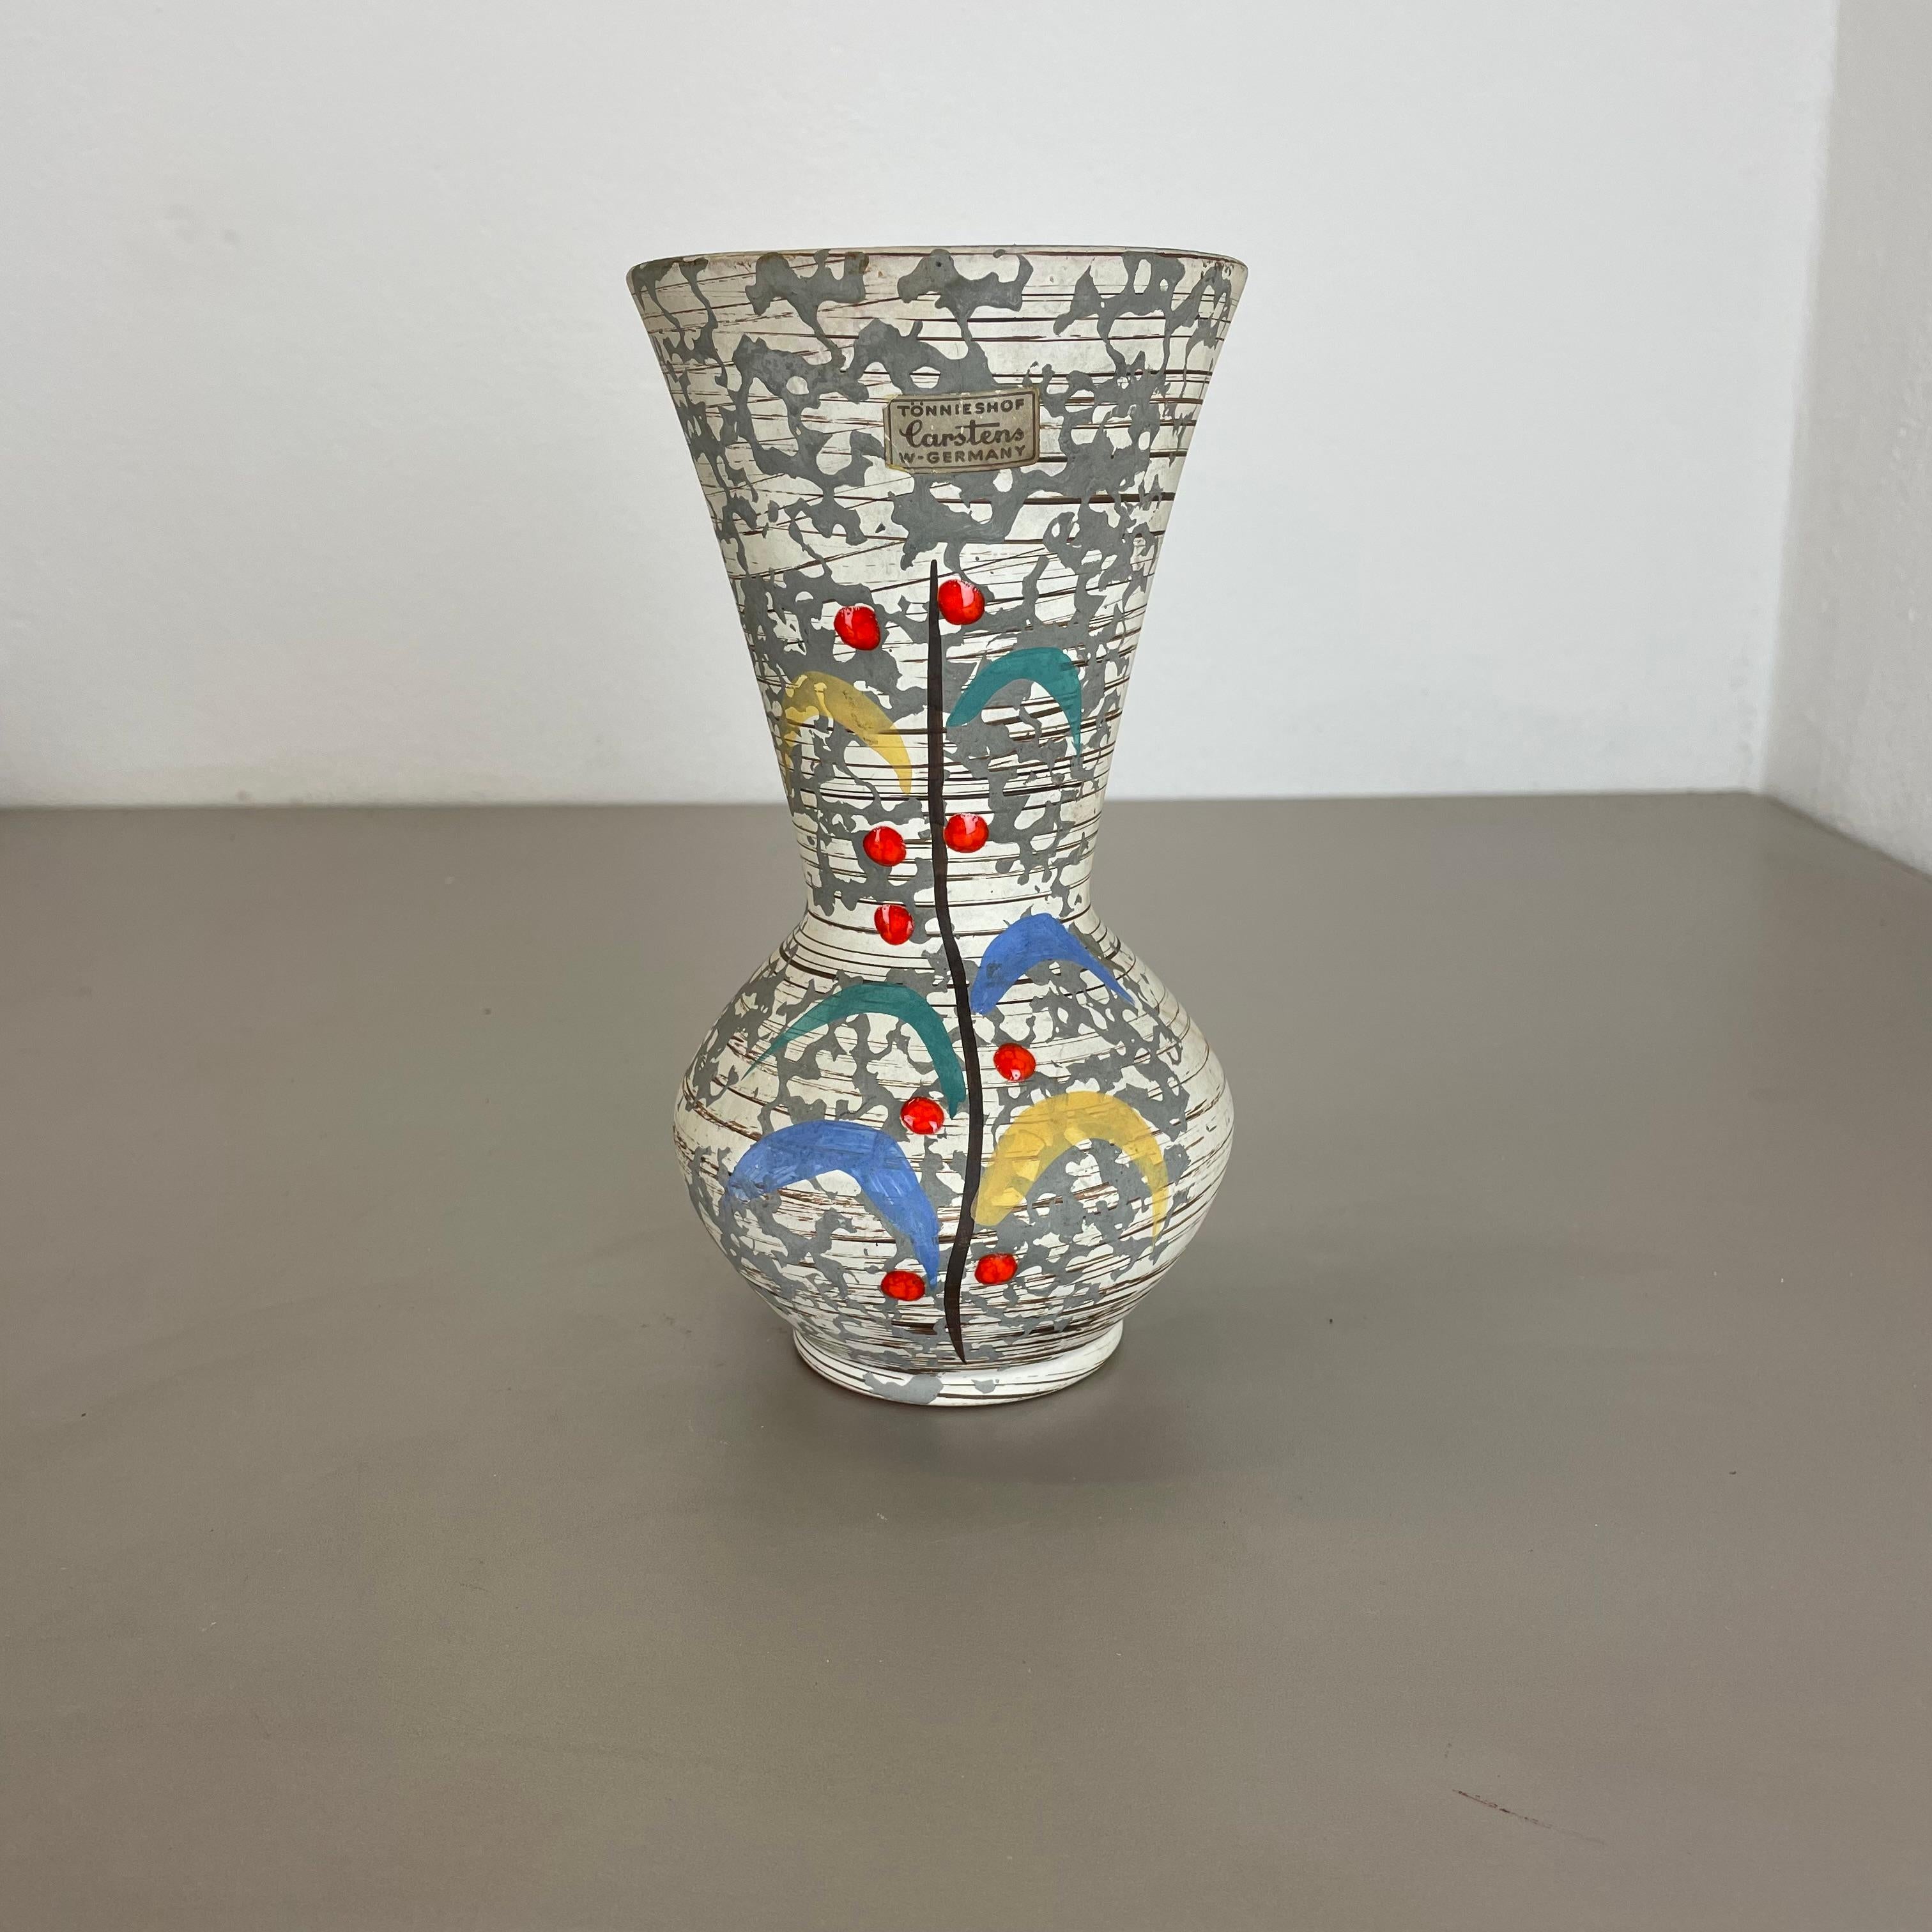 Artikel:

Vase aus Keramik


Herkunft:

Deutschland



Produzent:

Carstens Tönnieshof, Deutschland


Jahrzehnt:

1950s


Dieses originale Vintage-Keramikobjekt wurde von Cartens Tönnieshof in den 1950er Jahren in Deutschland hergestellt. Es ist aus